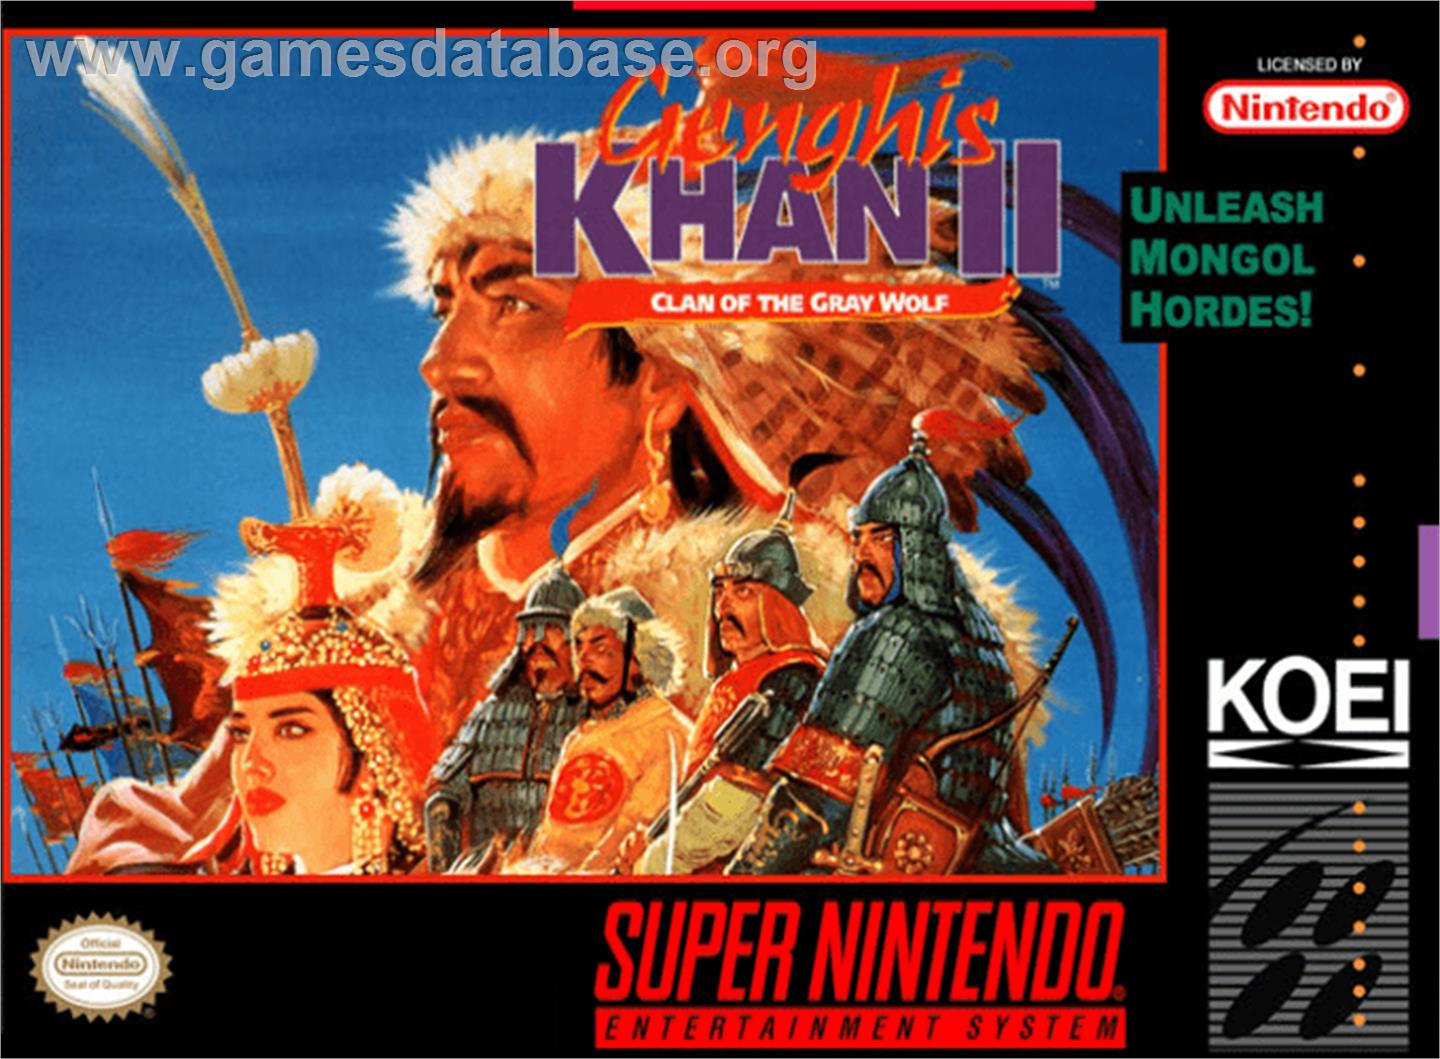 Genghis Khan II: Clan of the Grey Wolf - Nintendo SNES - Artwork - Box